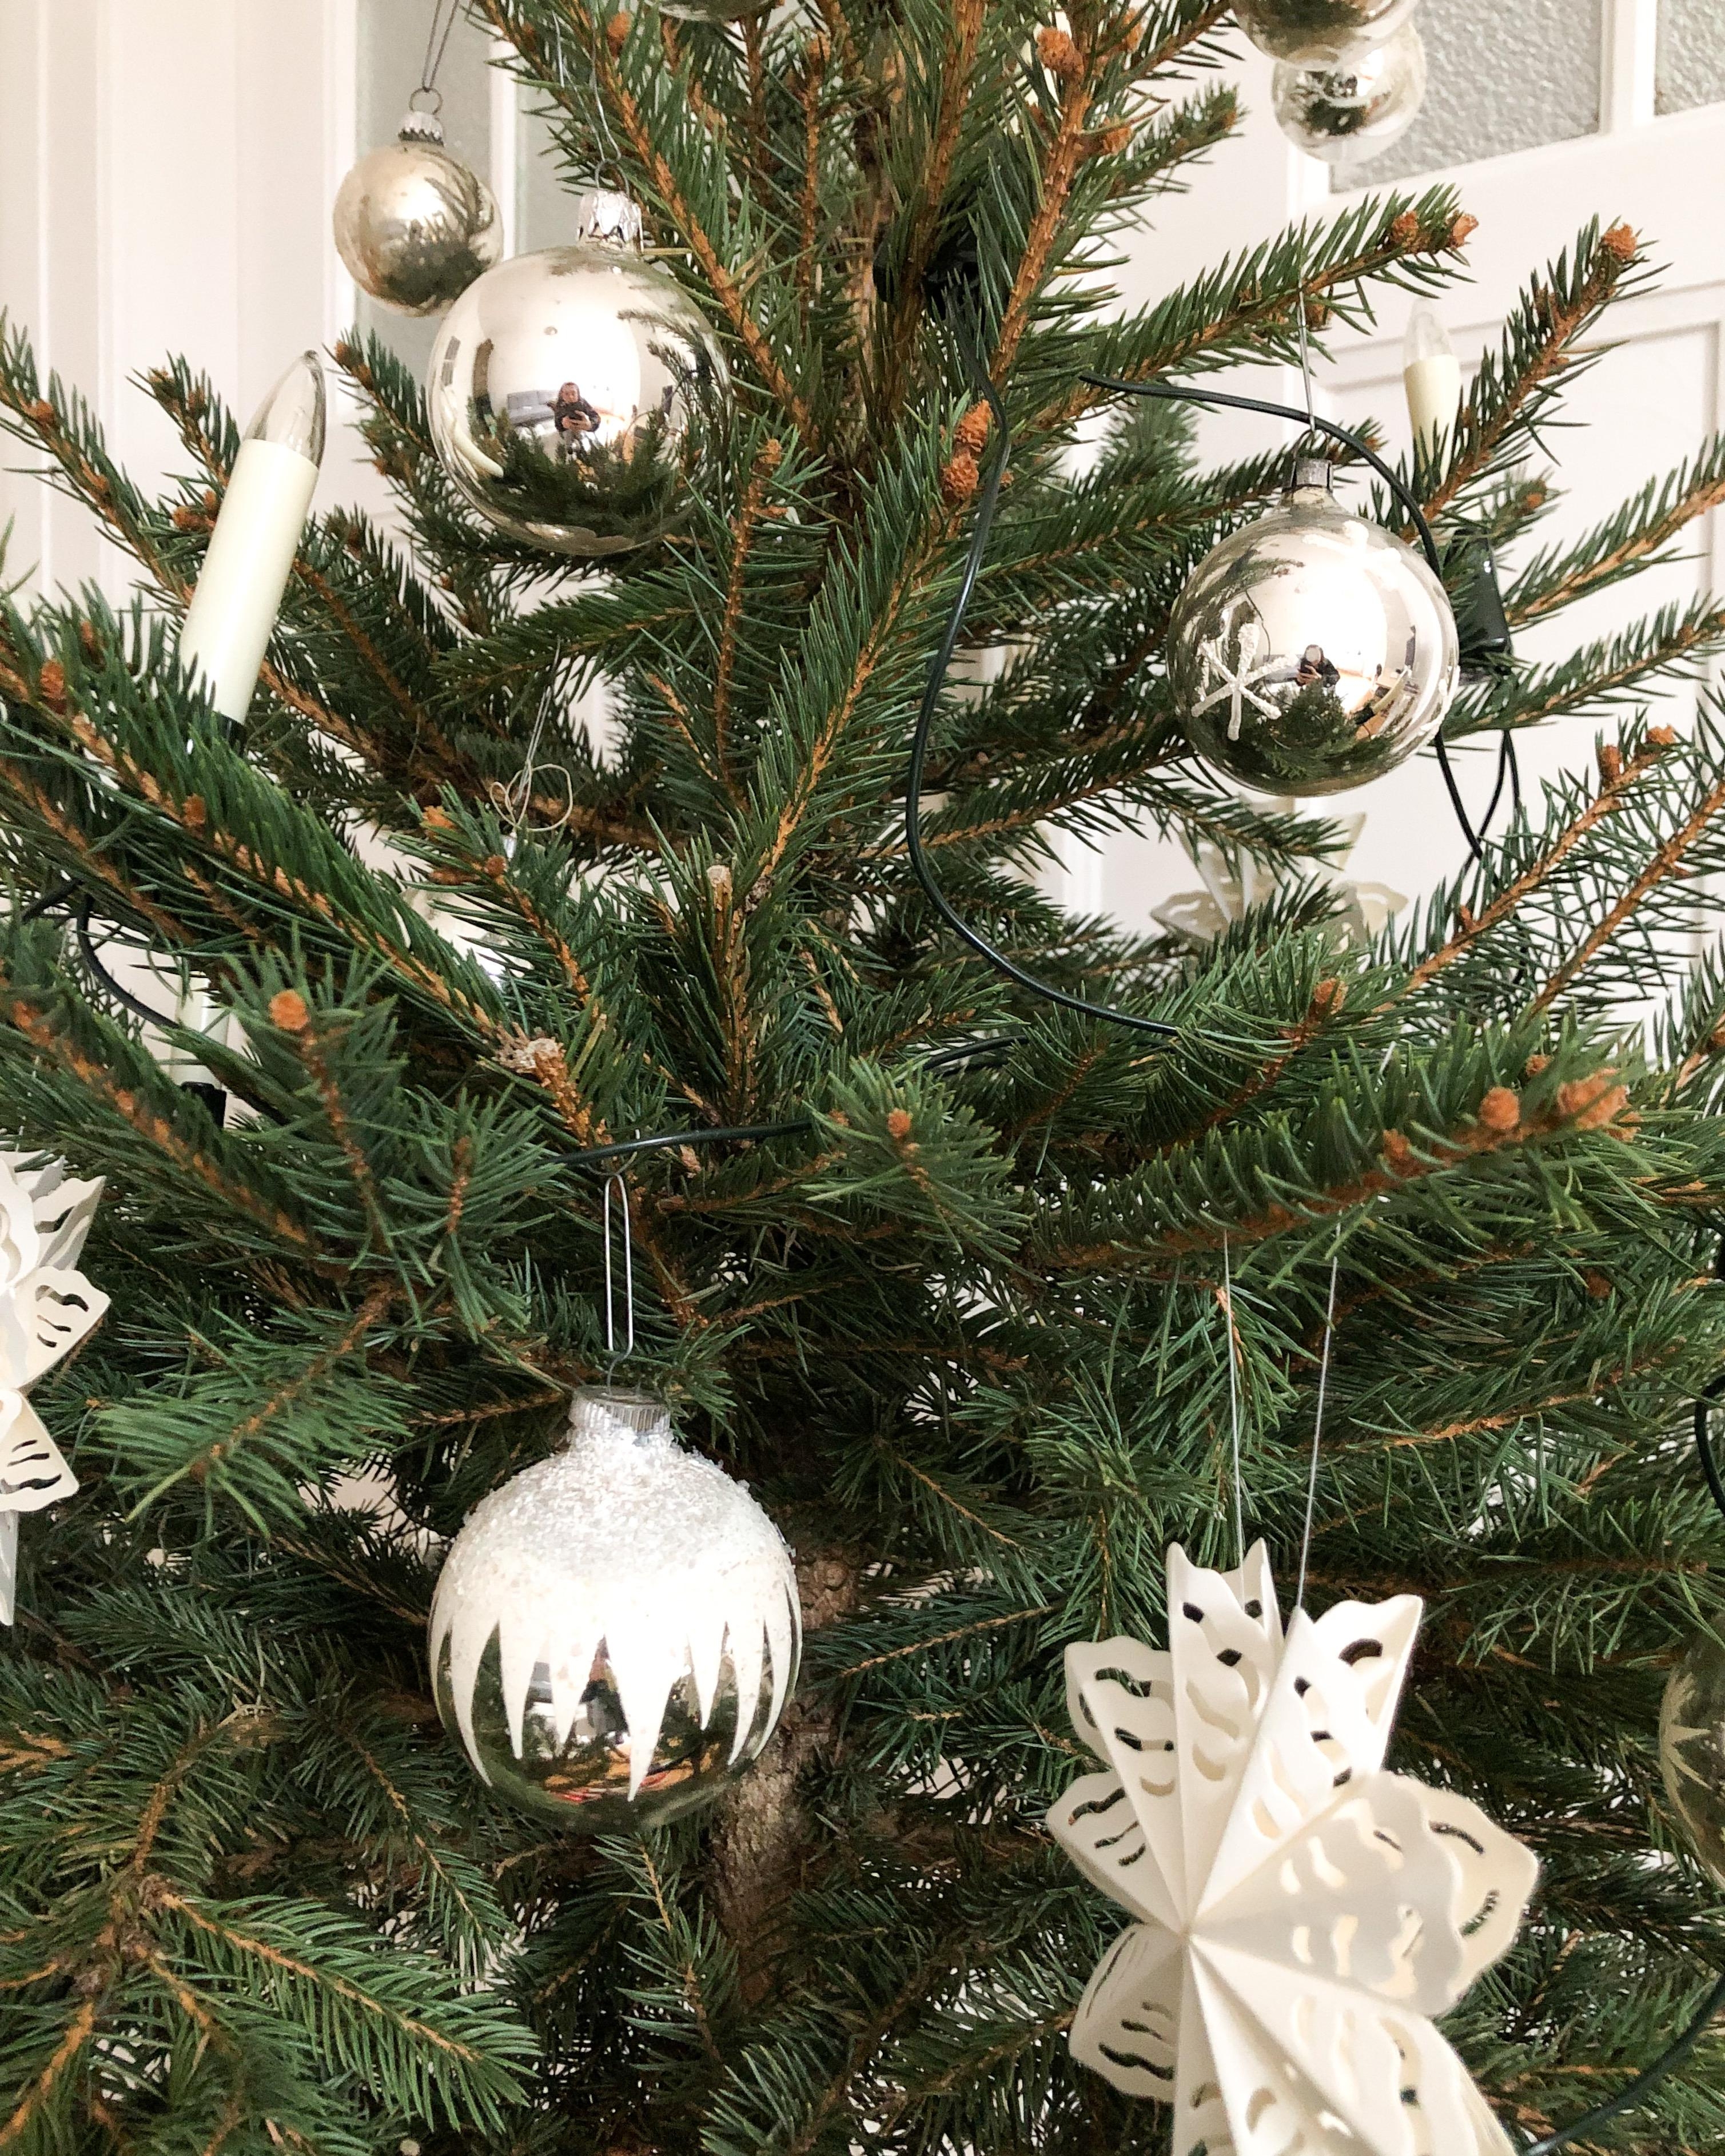 #christbaumschmuck #secondhand #vintage #midcentury #tannenbaum #weihnachtsbaum #baumschmuck #ornamente